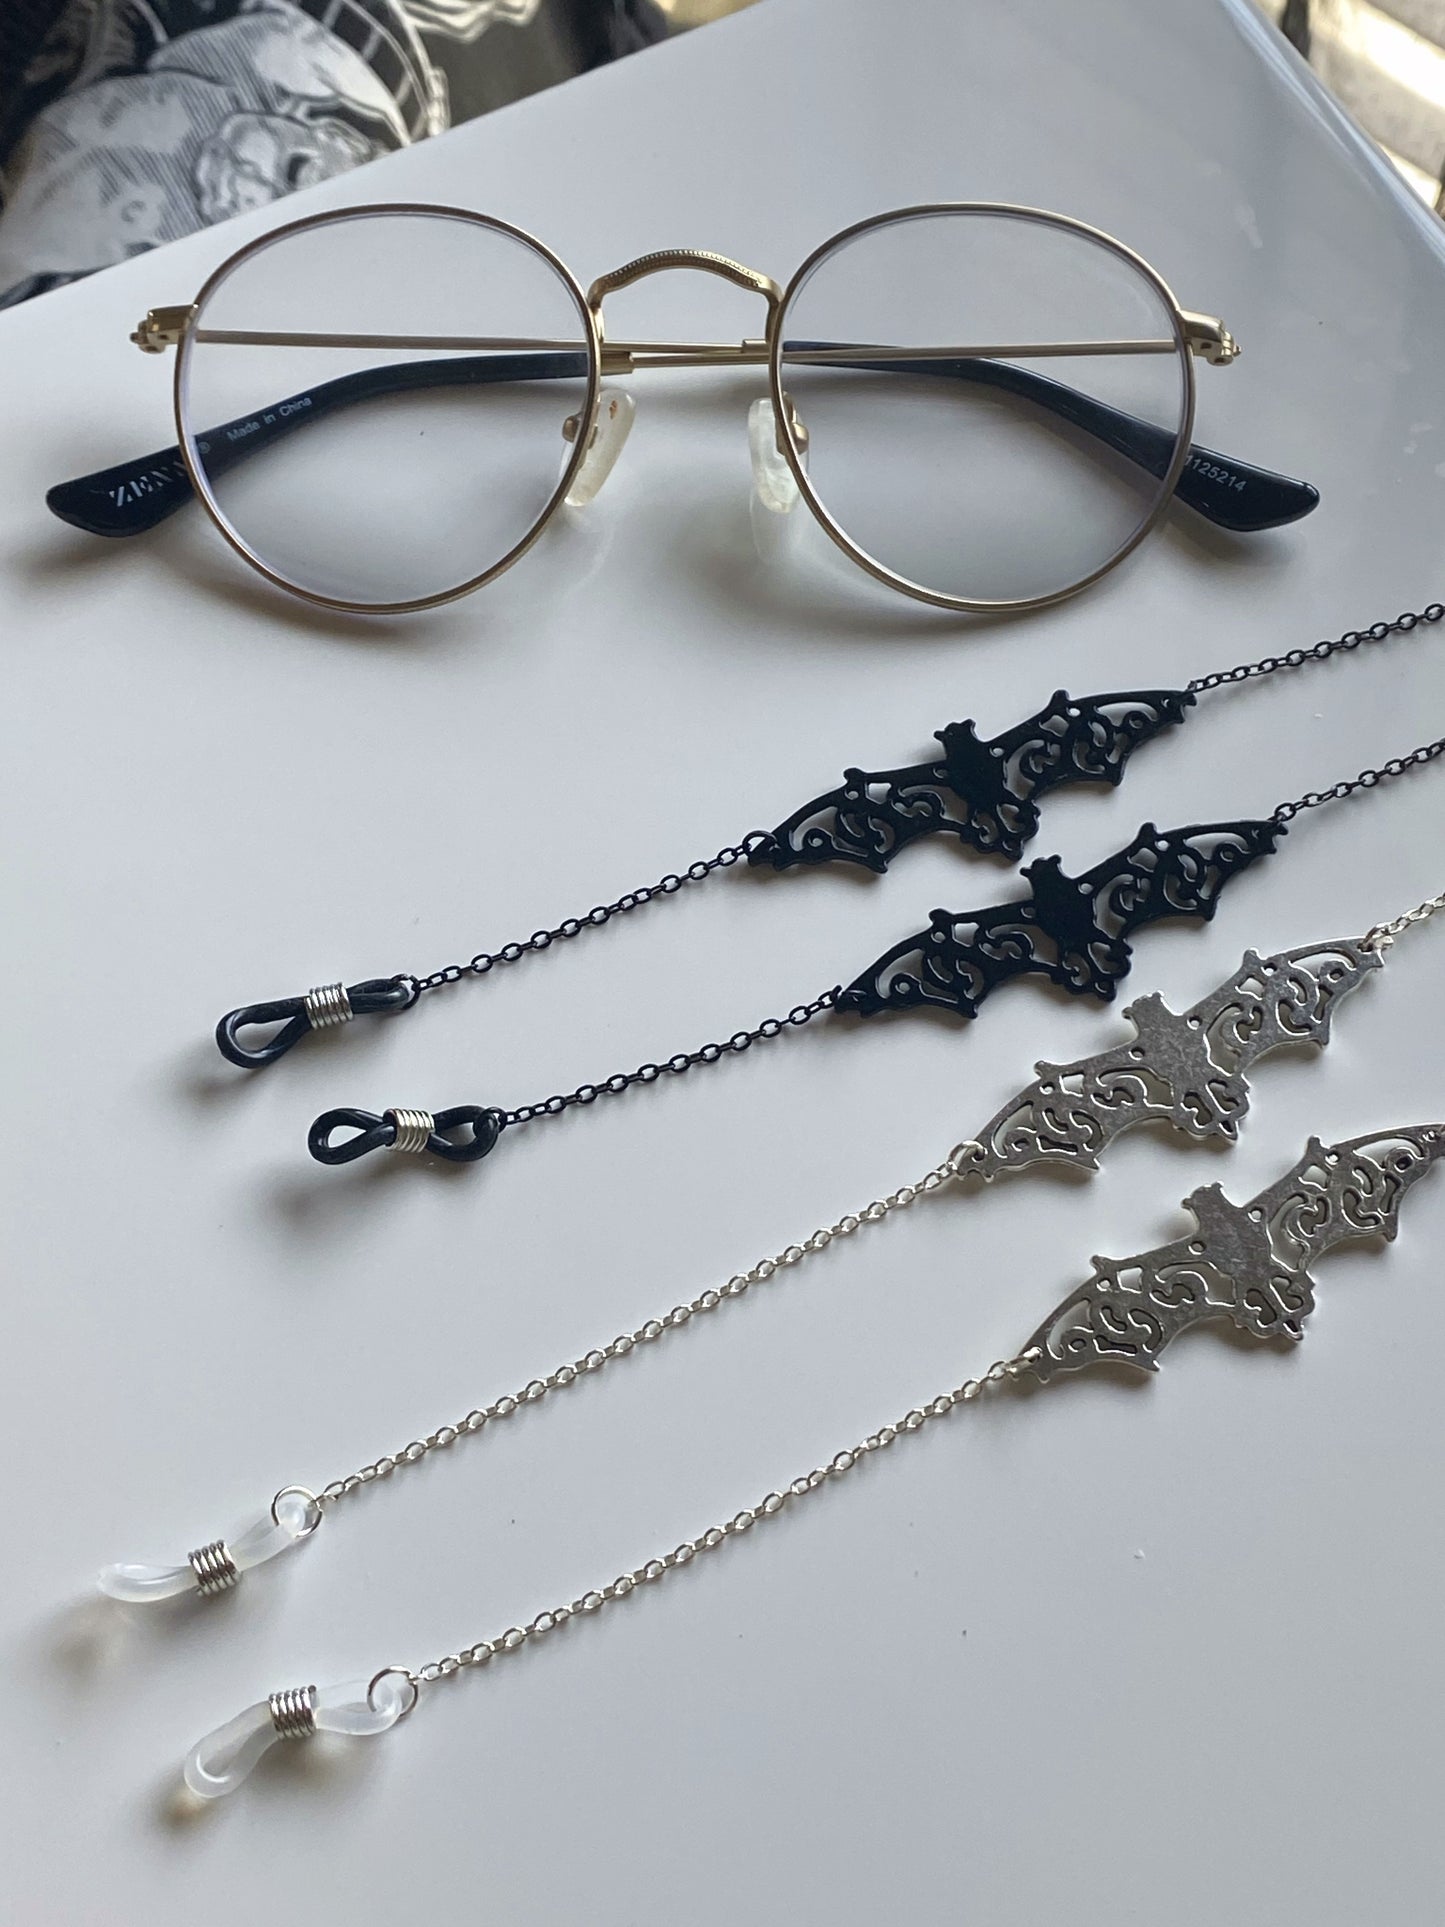 Bat Glasses Chain